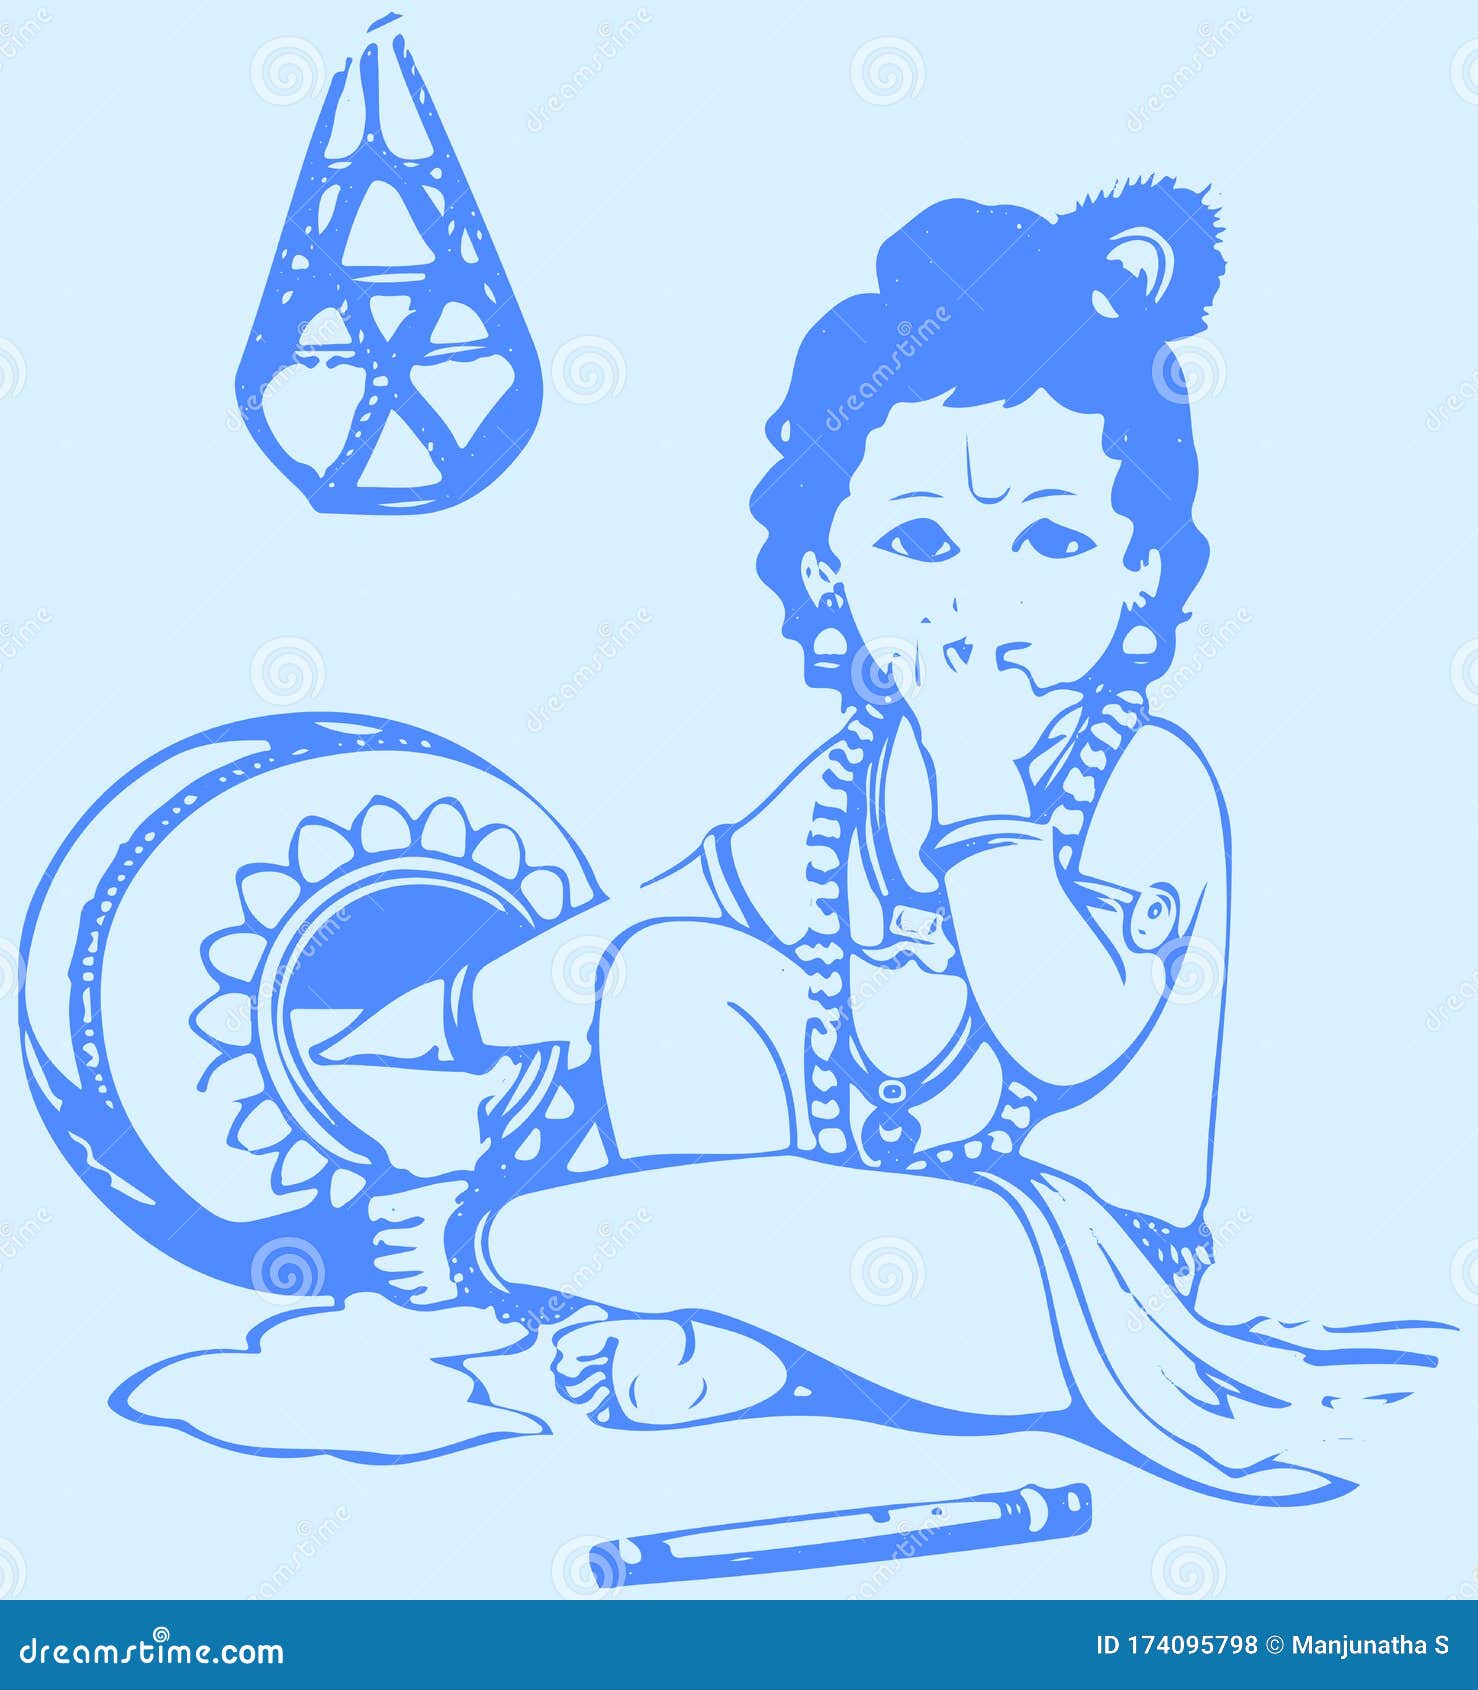 Krishna pencil sketch, lord krishna, hindu god, bhakti, devotional, god, HD  phone wallpaper | Peakpx